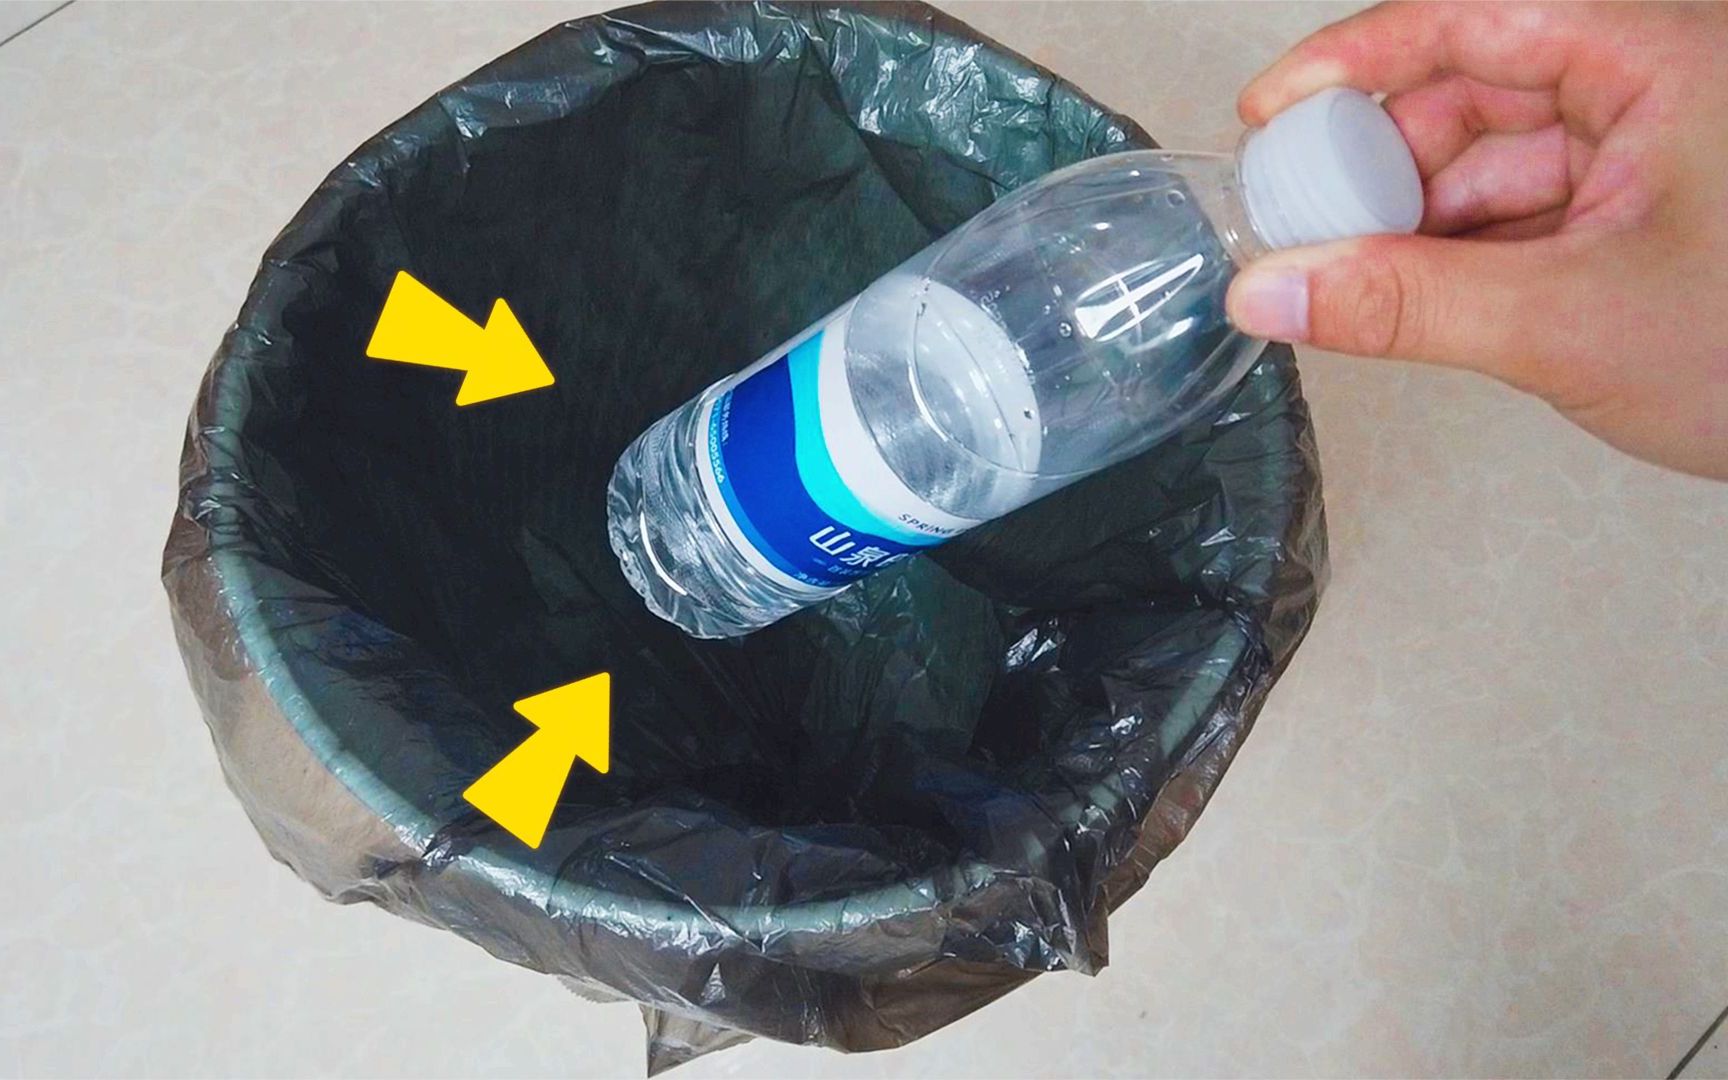 以后就这样做!垃圾桶里放一个塑料瓶,真是聪明,解决了大难题